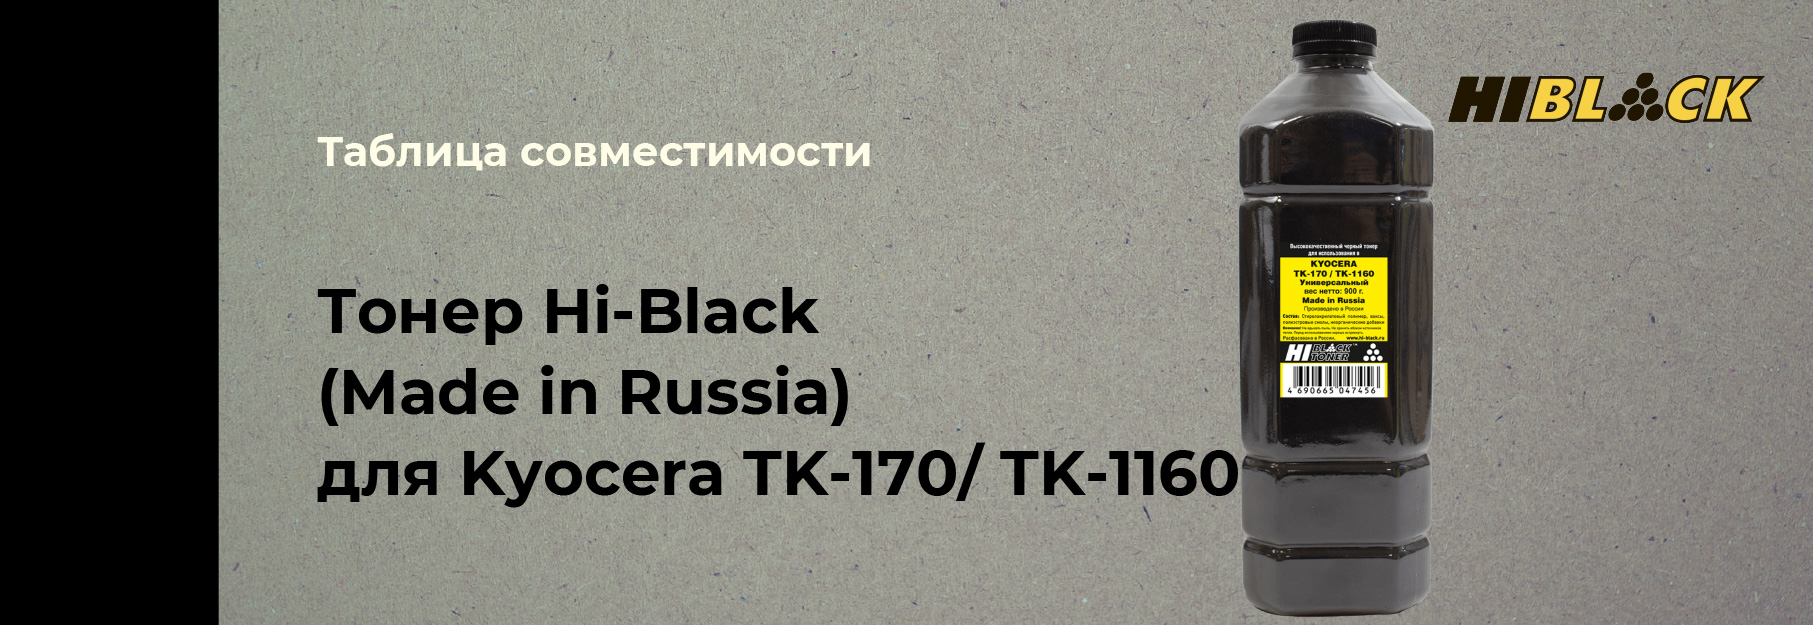 tablica-sovmestimosti-Hi-Black-Kyocera-TK-170-TK-1160.jpg